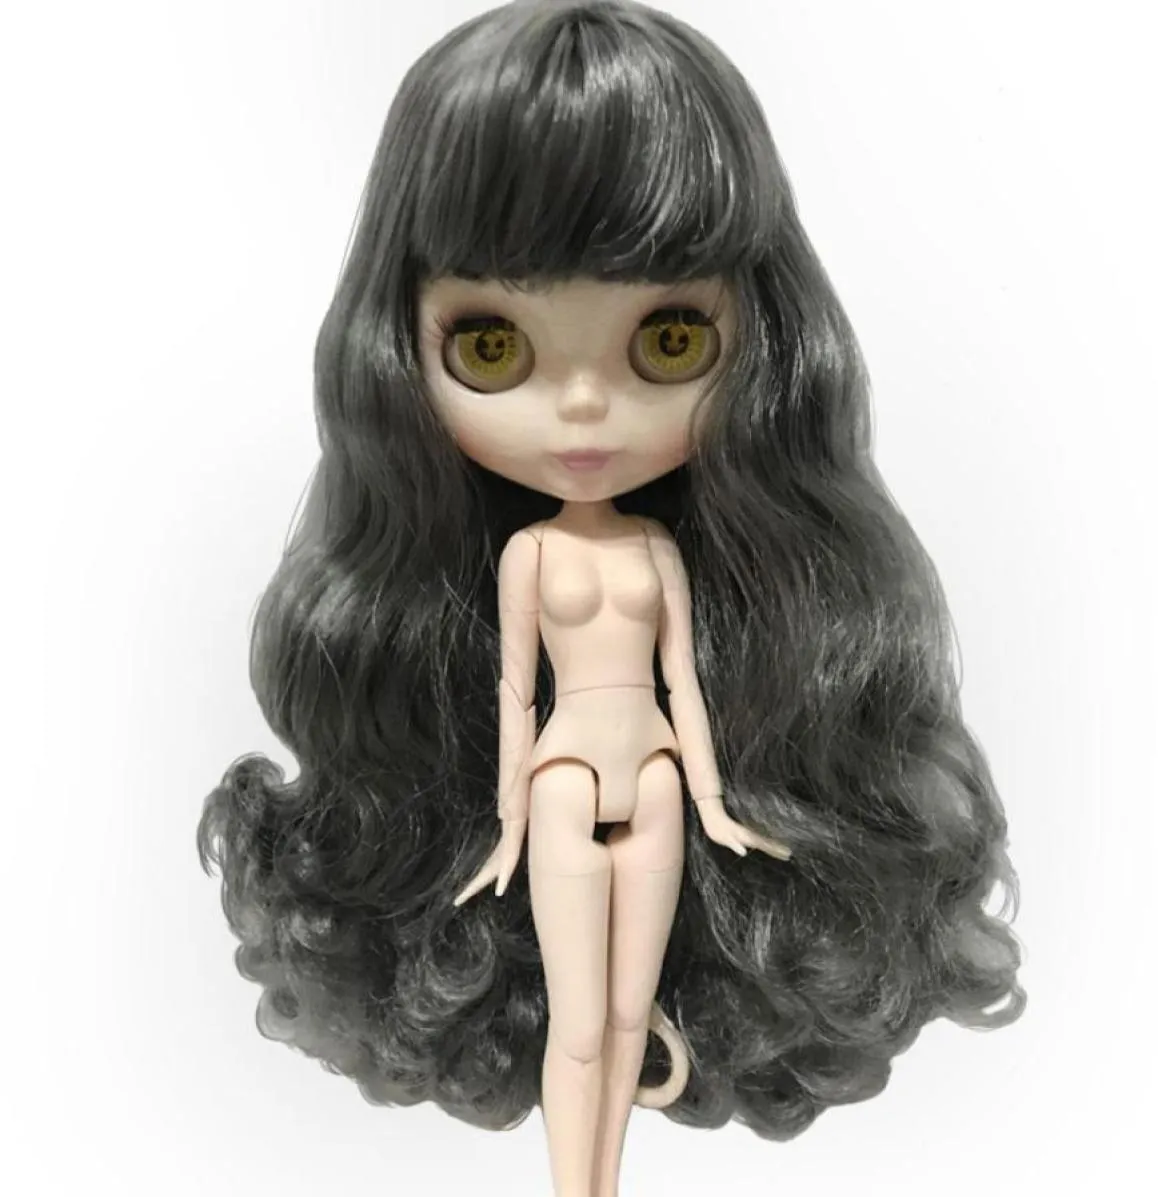 Blythe 17 Action Doll Nude Dolls Body Change en mängd olika stilar Curly Short Straight Anpassningsbar hårfärg51225109792314